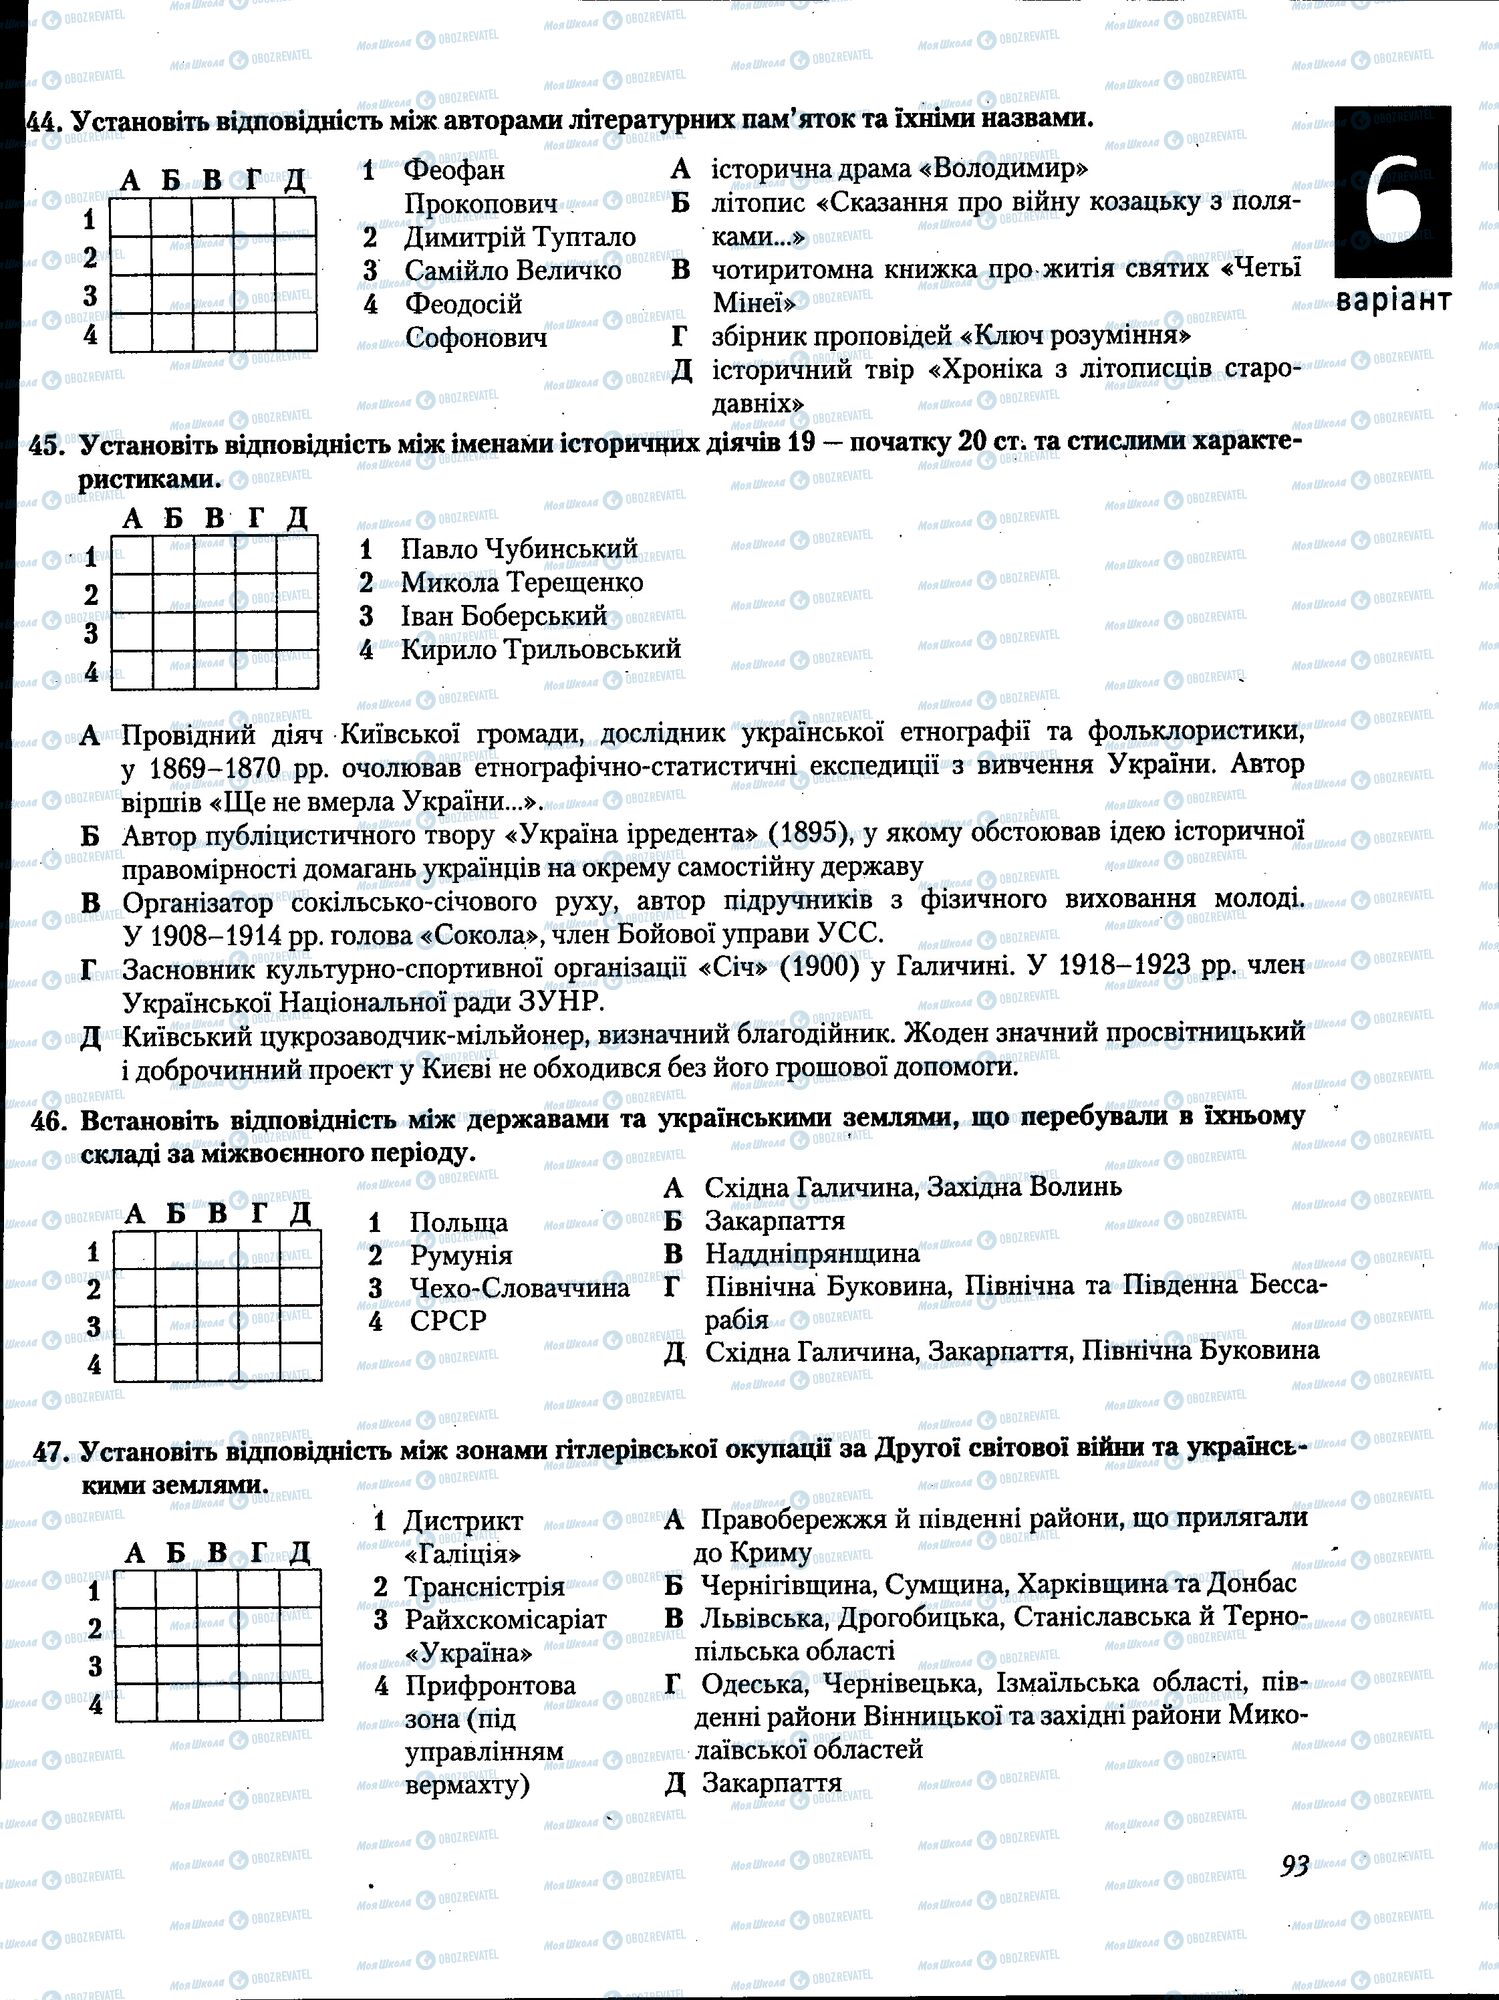 ЗНО История Украины 11 класс страница 093